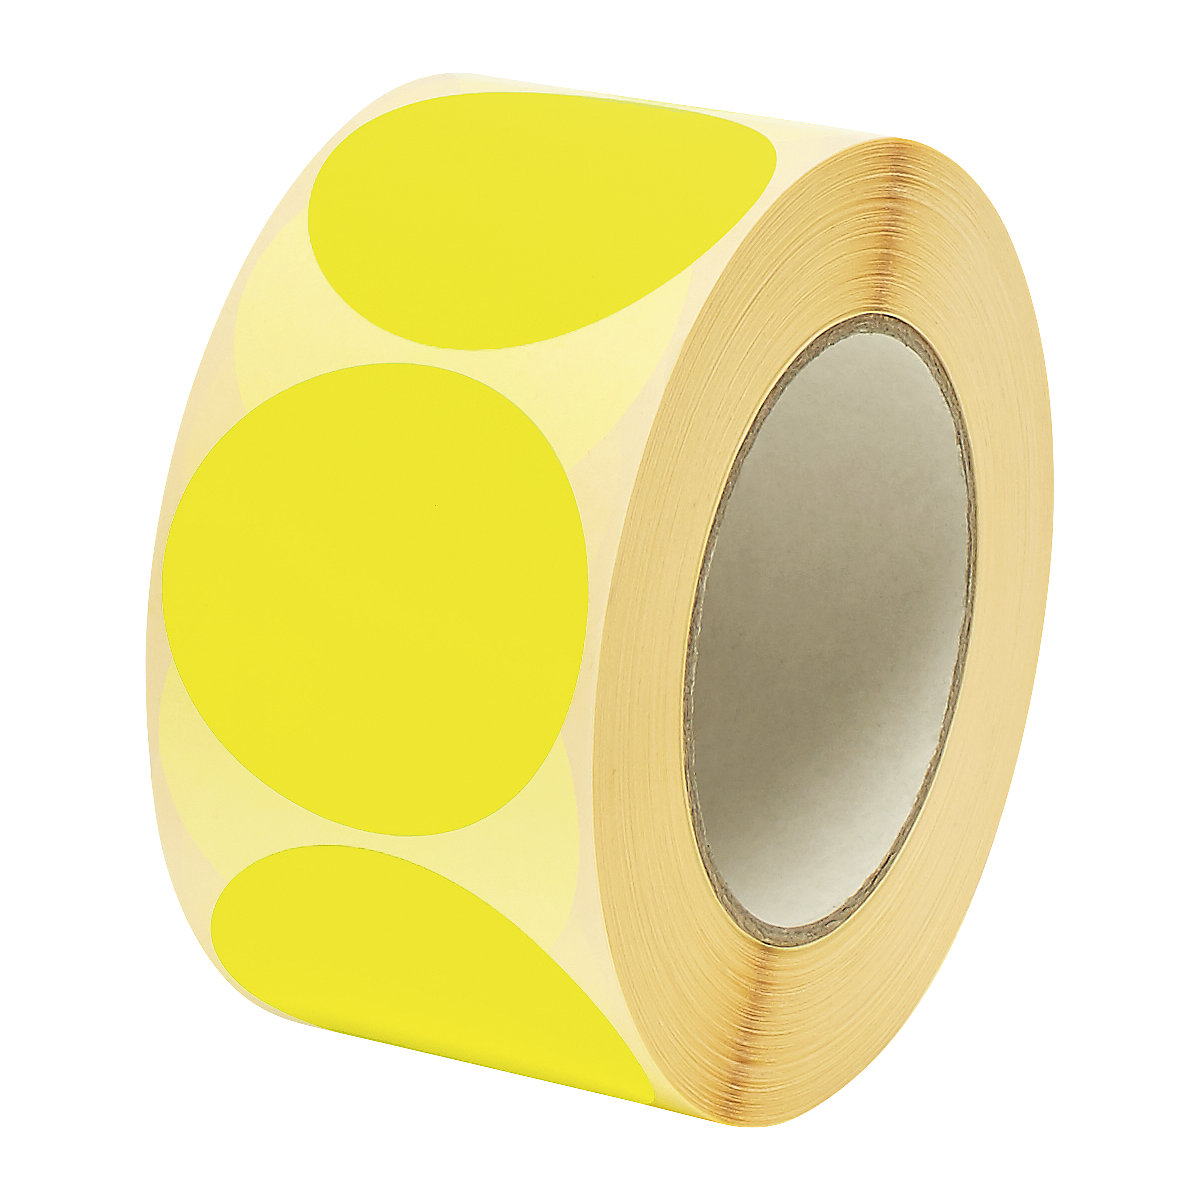 Contrassegni segnaletici, Ø 60 mm, 1000 pz. per rotolo, giallo, a partire da 2 conf.-3